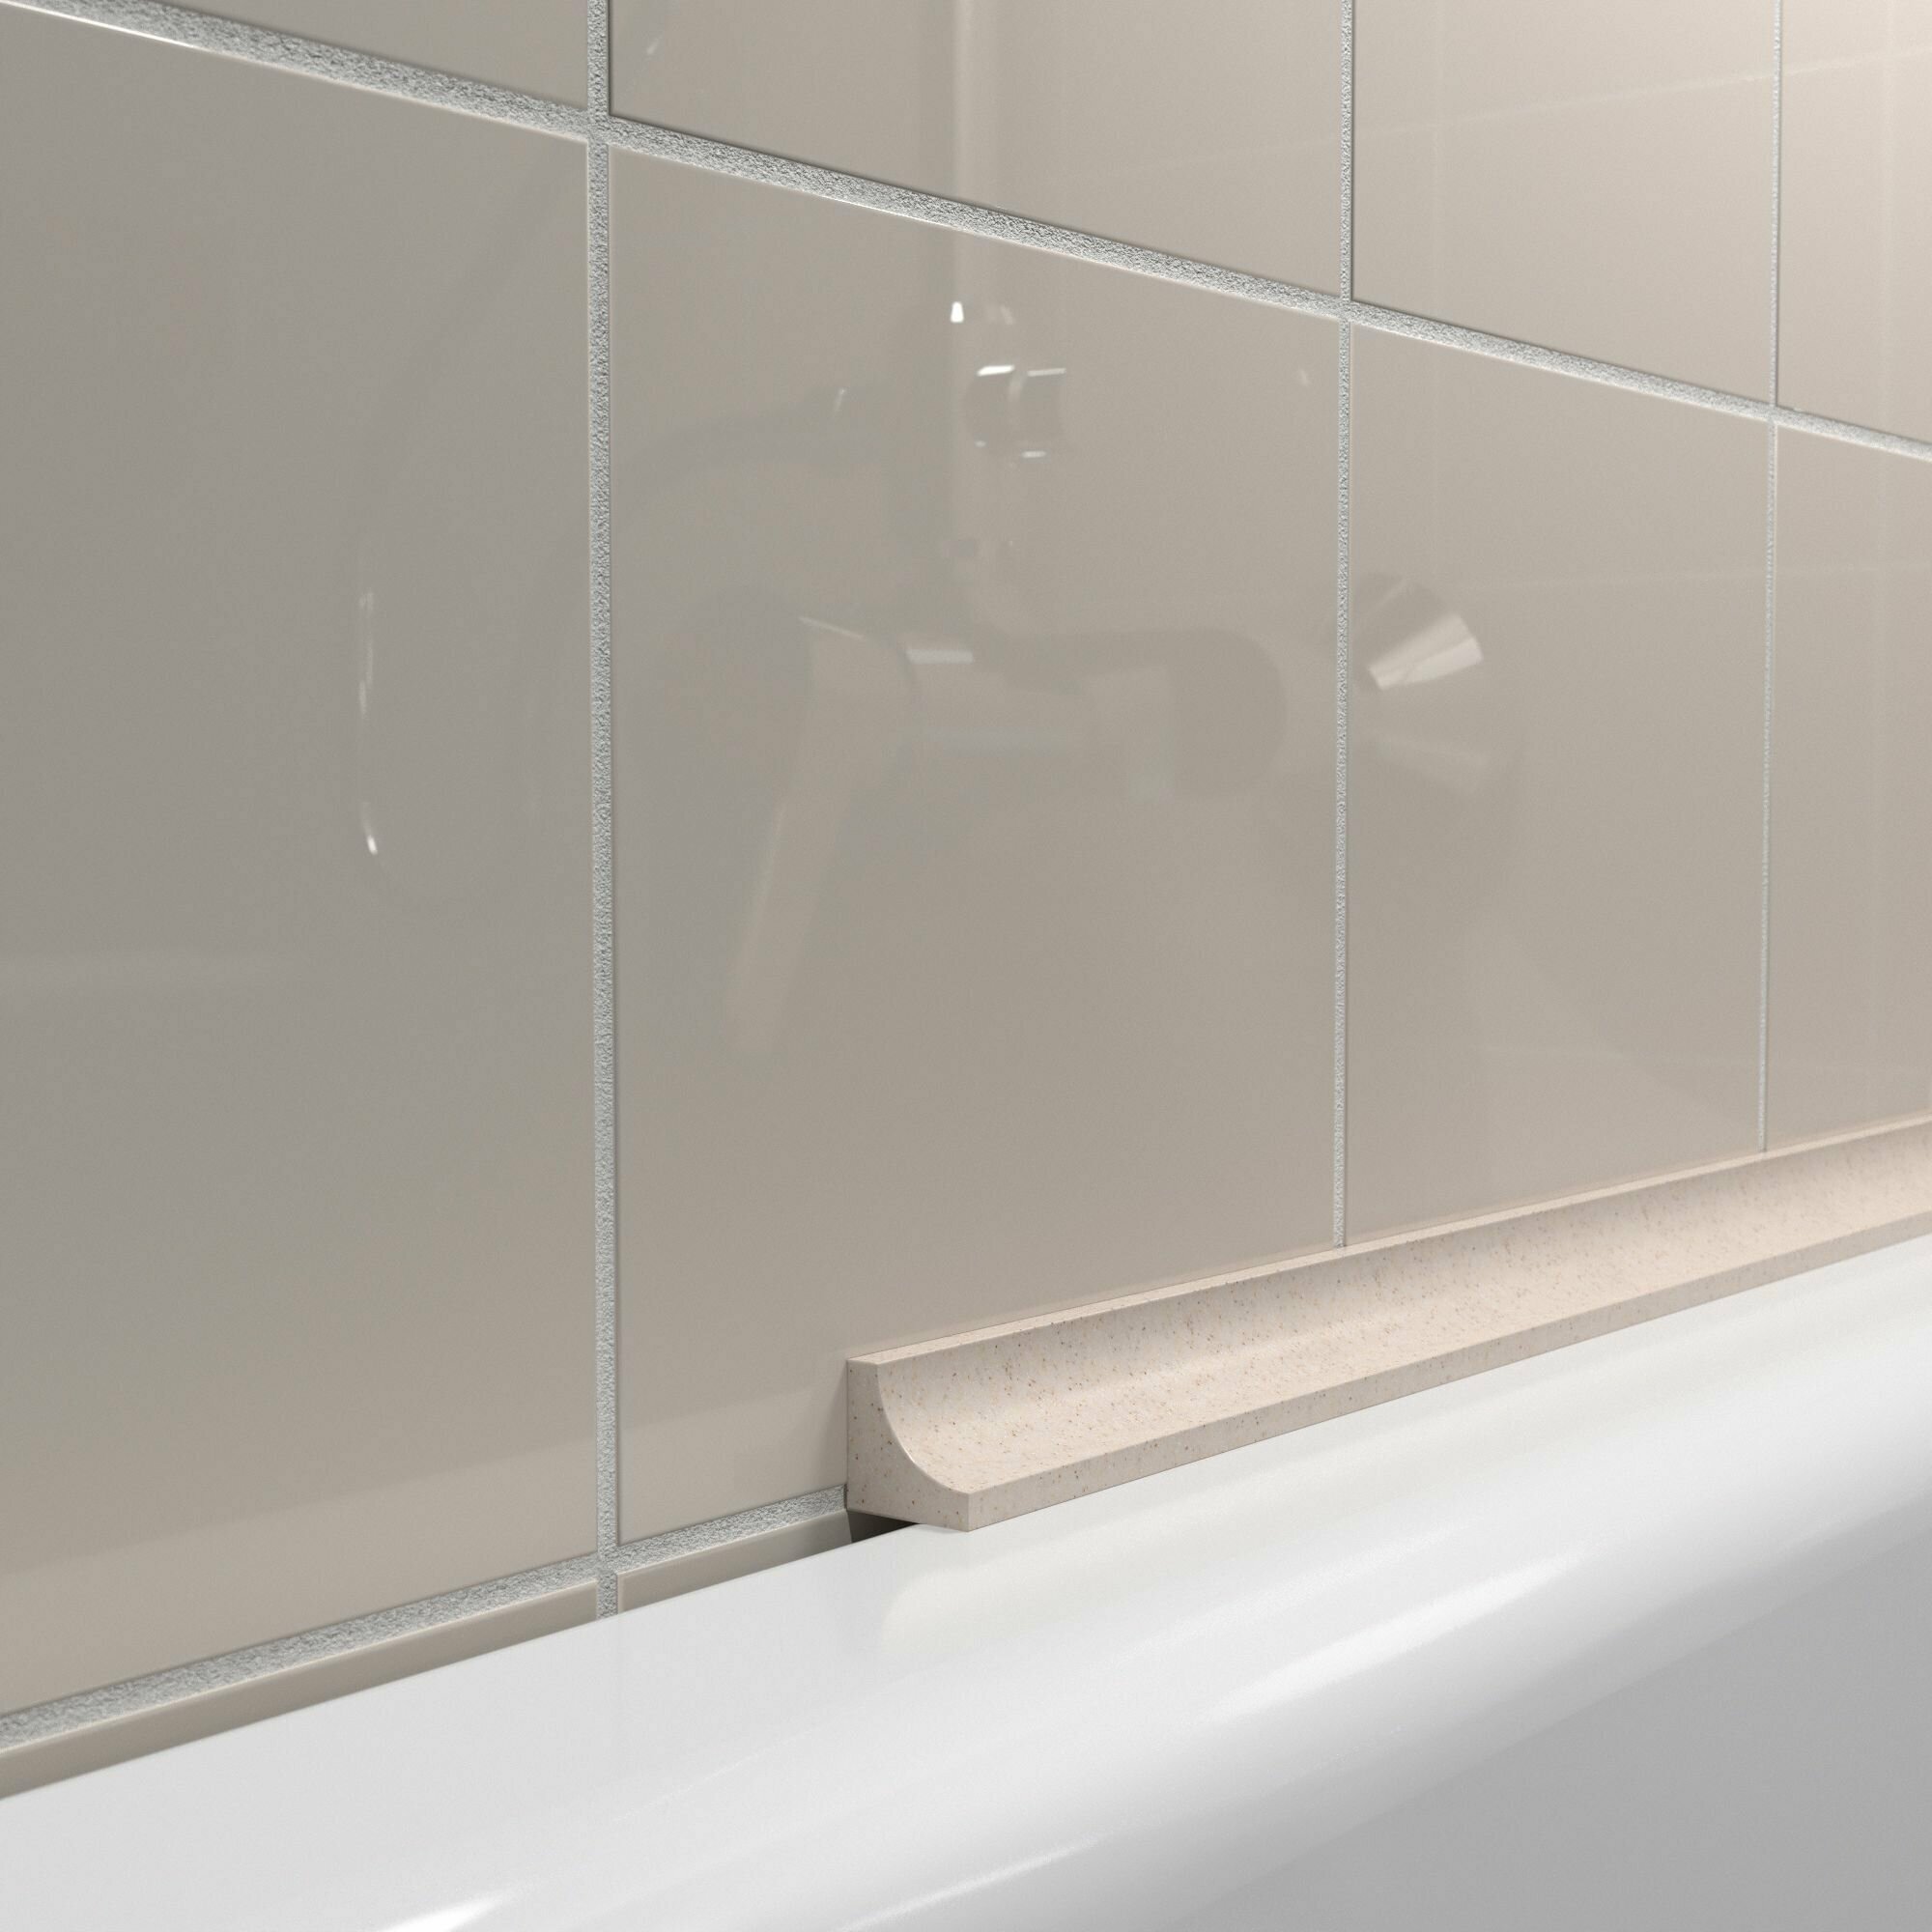 Акриловый плинтус бордюр для ванной BNV ГЛ12 180 сантиметров бежевый цвет глянцевая поверхность